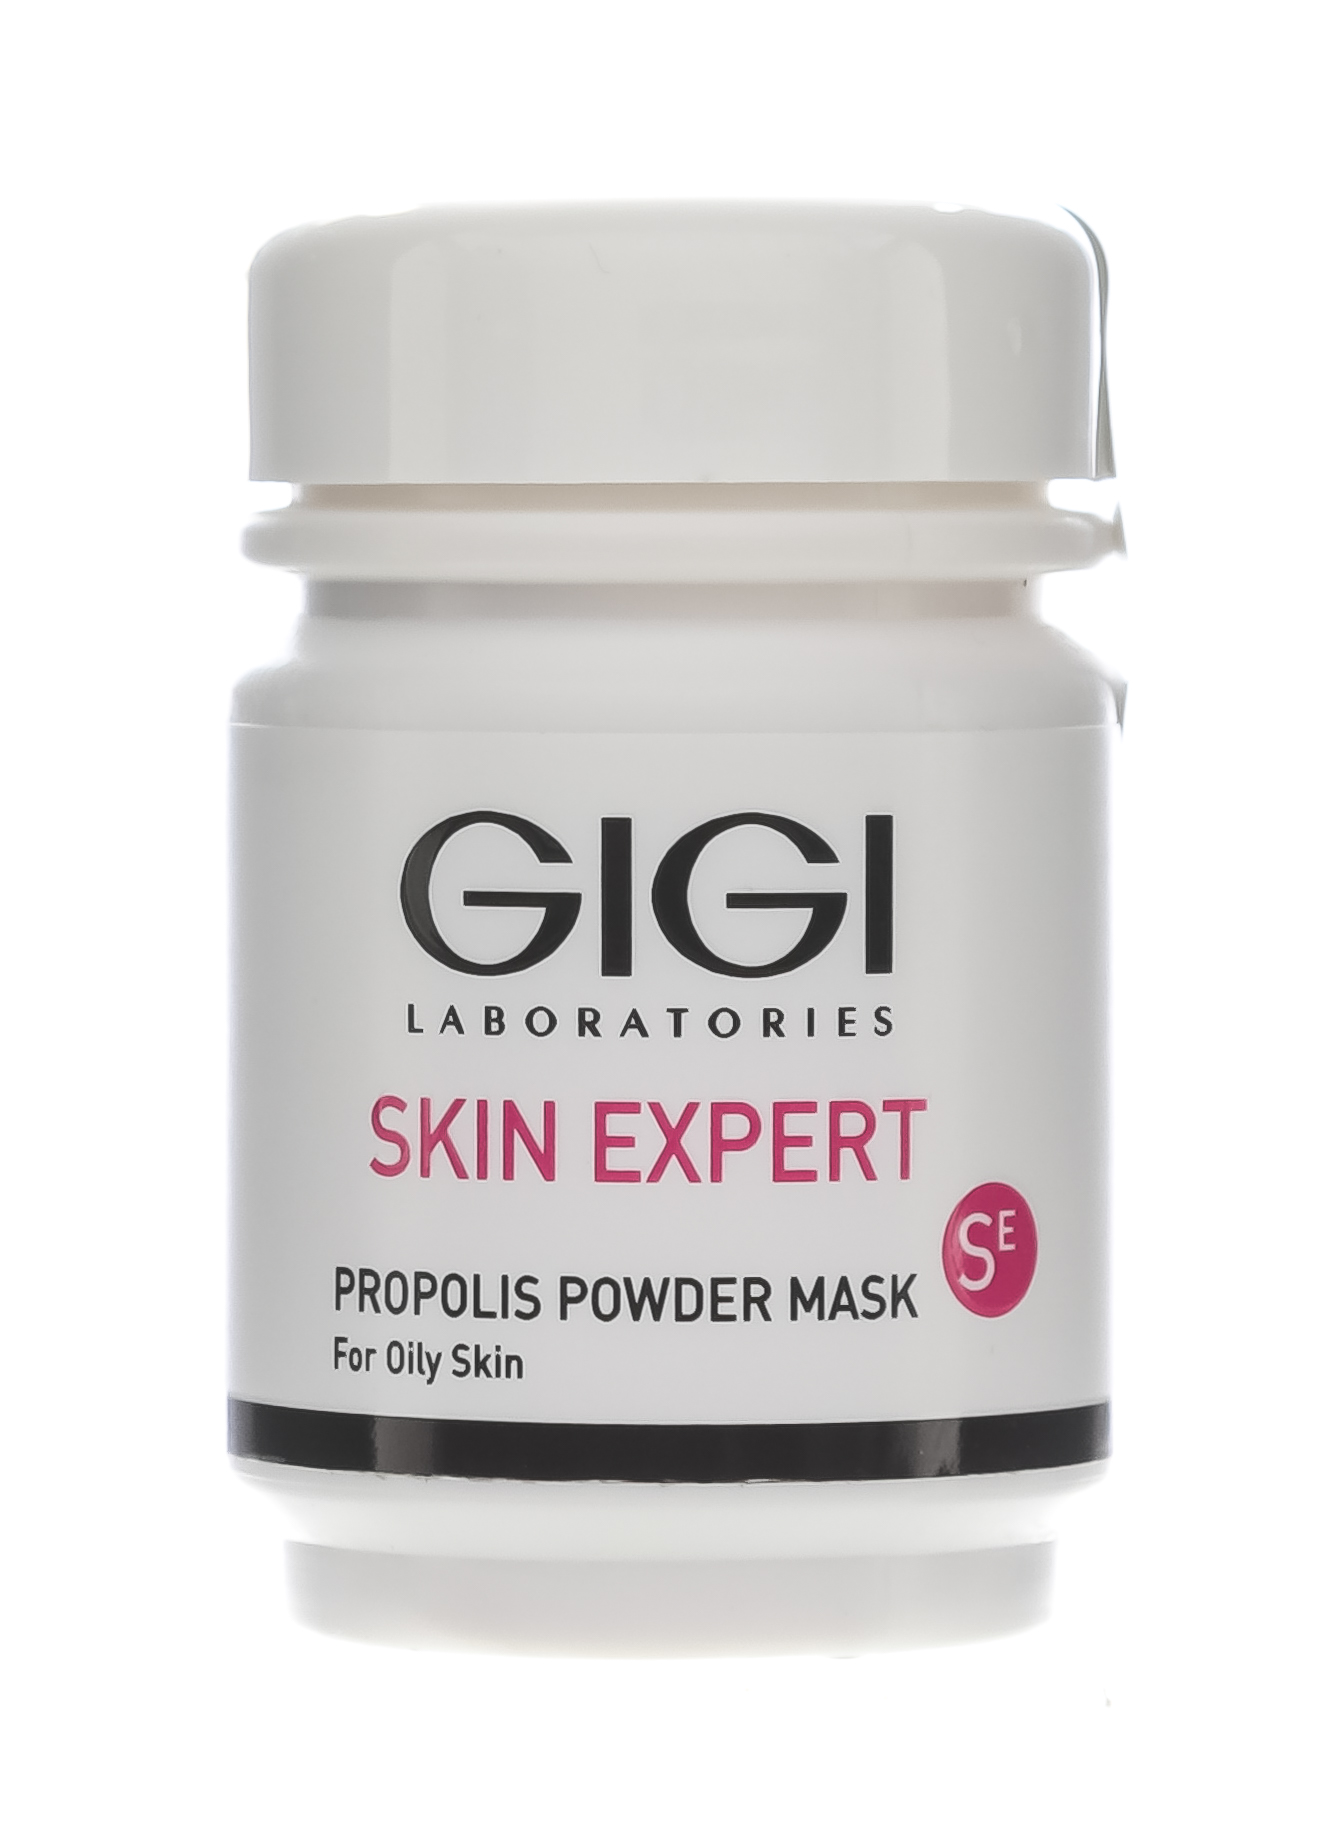 ДжиДжи Пудра очищающая прополисная Propolis Poweder Mask, 50 мл (GiGi, Skin Expert) фото 0